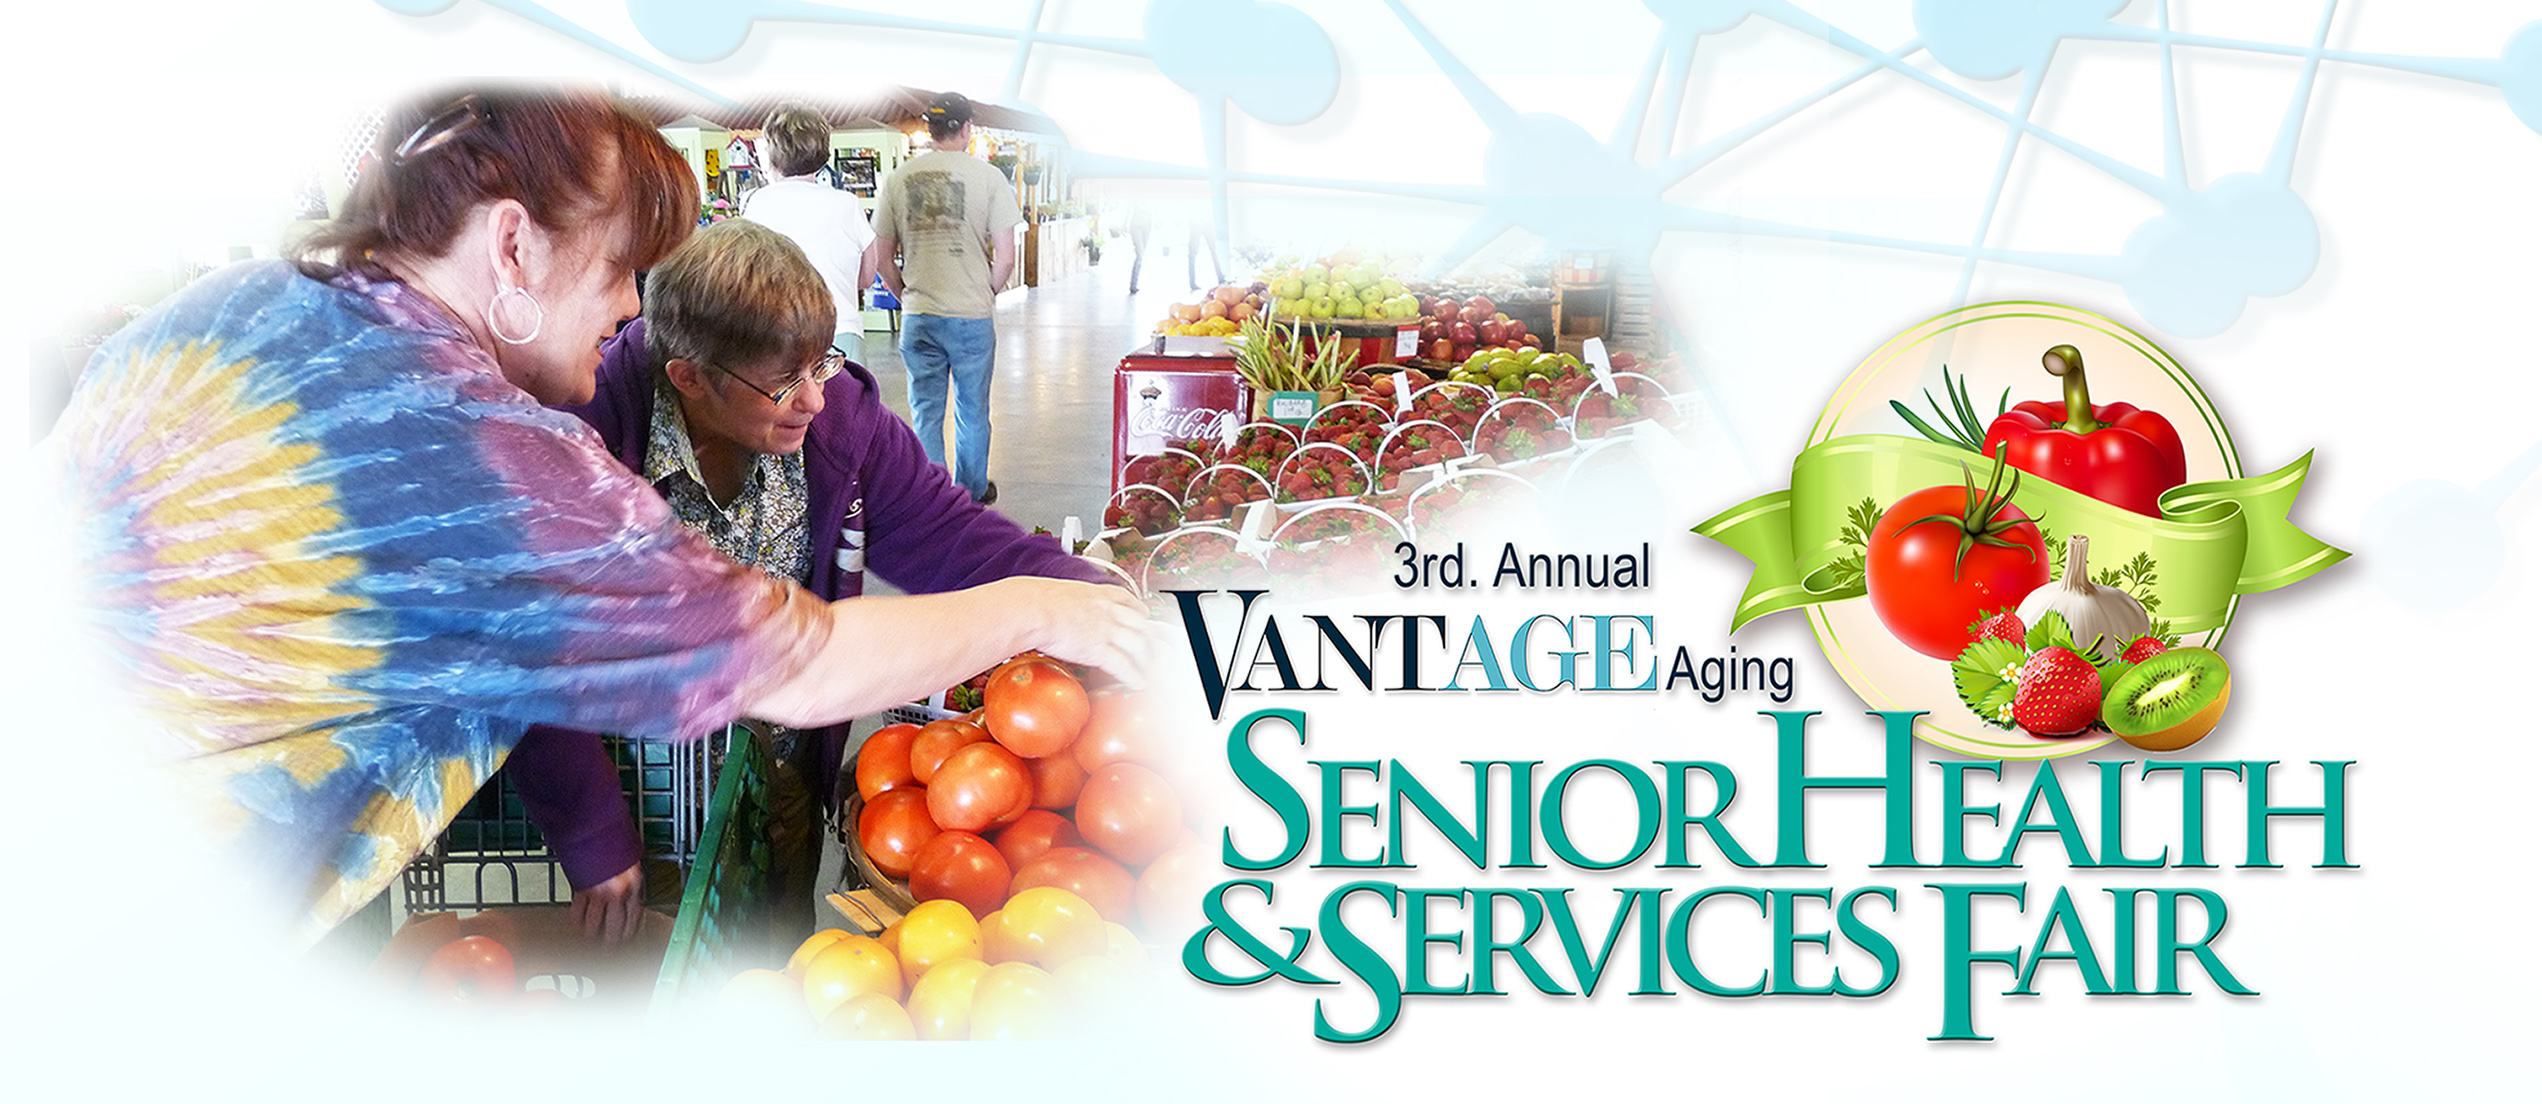 The 3rd Annual VANTAGE Aging Senior Health & Services Fair logo